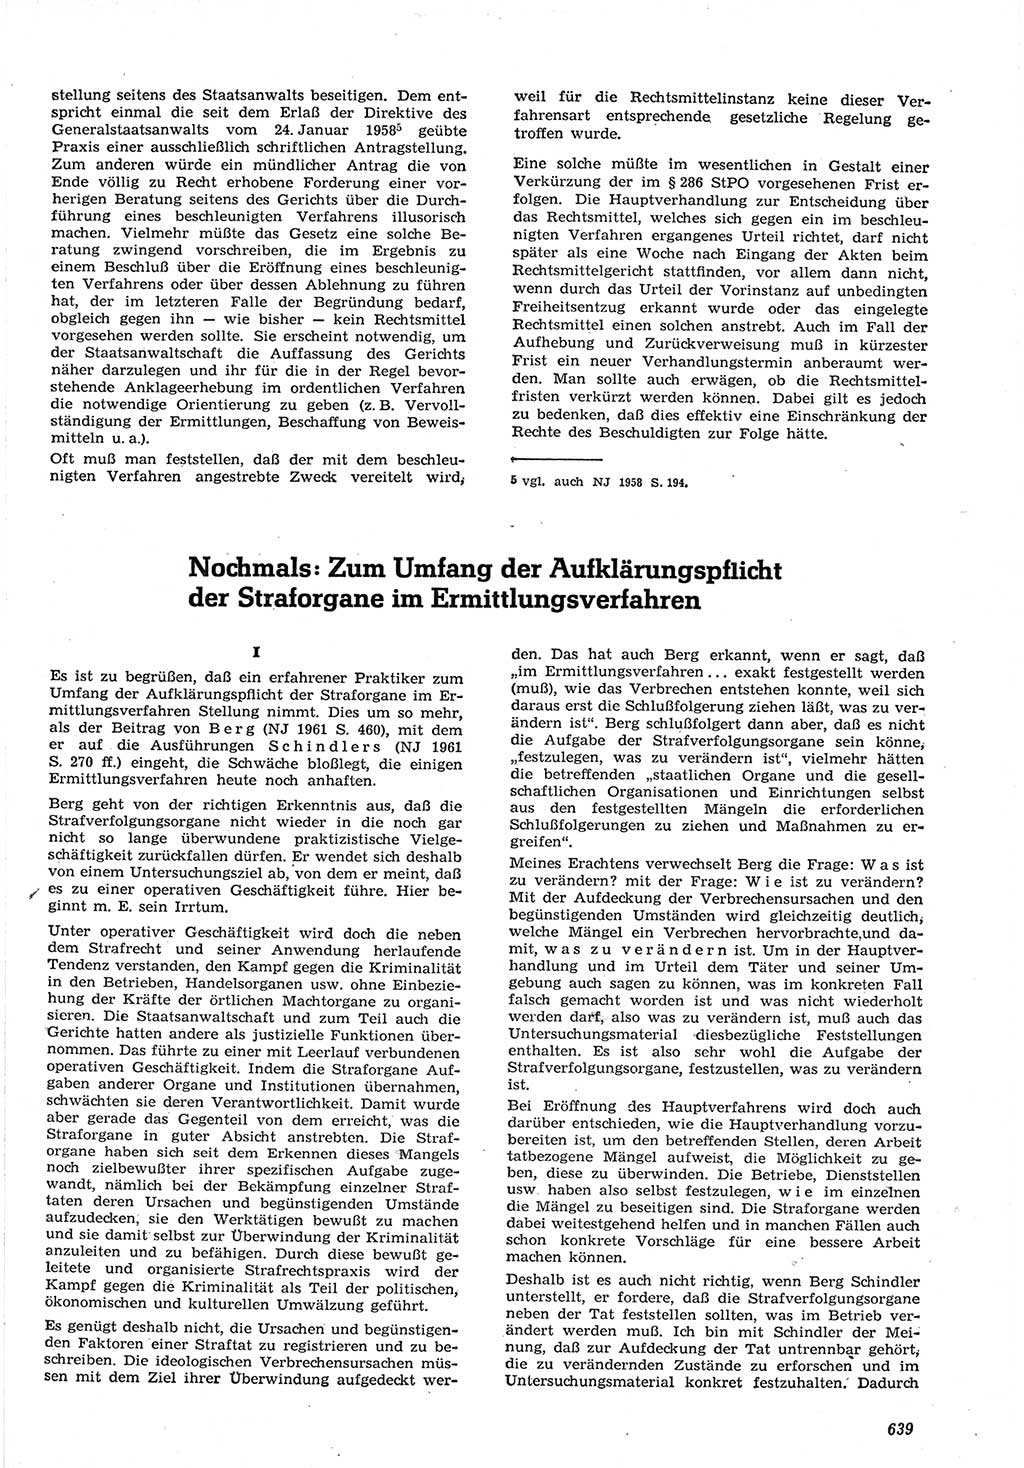 Neue Justiz (NJ), Zeitschrift für Recht und Rechtswissenschaft [Deutsche Demokratische Republik (DDR)], 15. Jahrgang 1961, Seite 639 (NJ DDR 1961, S. 639)